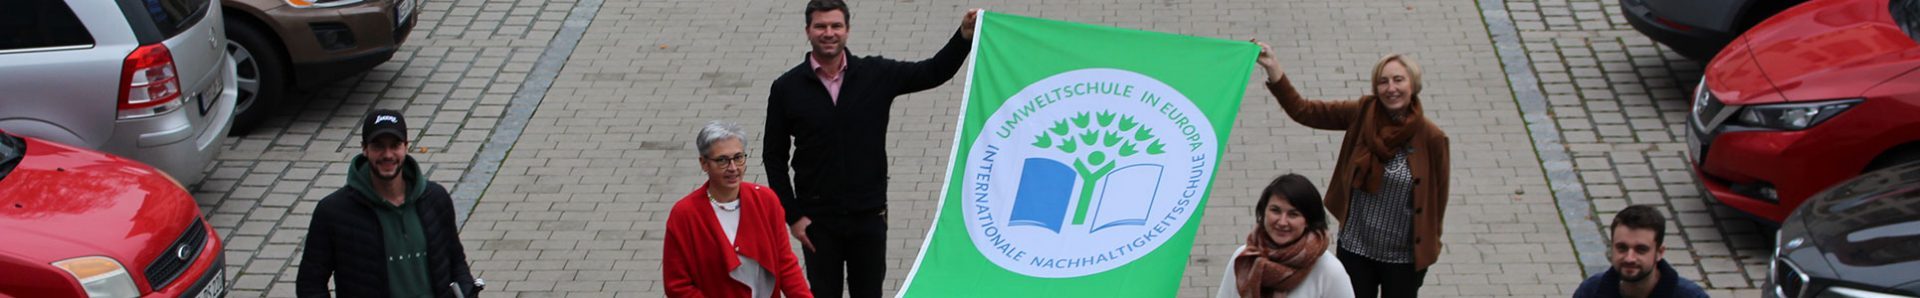 Lehrer mit Umweltschulen Logo als Fahne